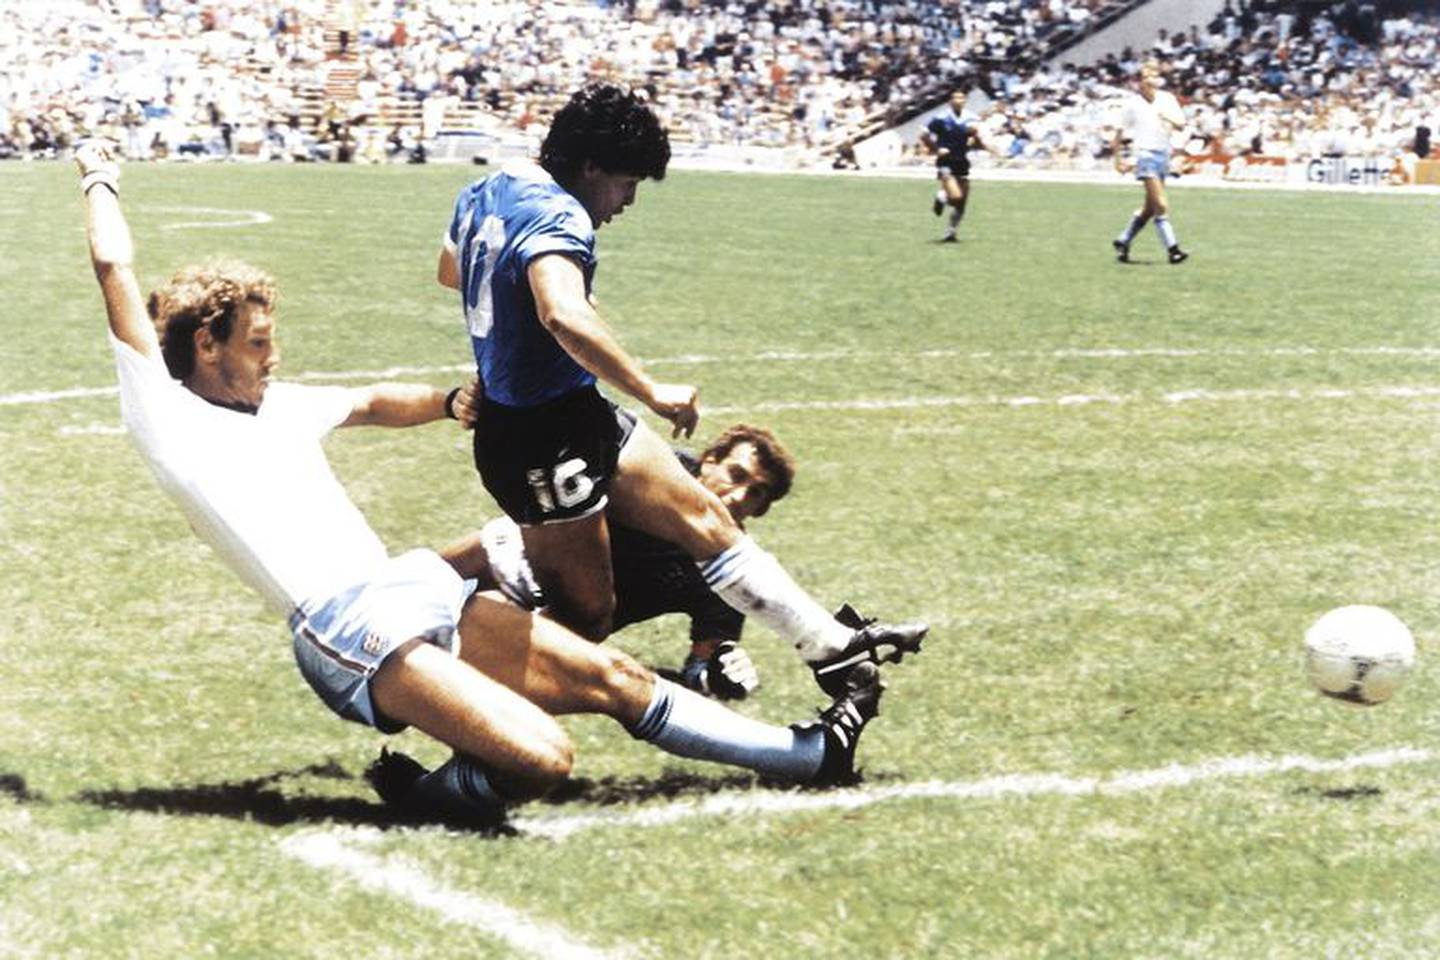 El segundo gol de Maradona a Inglaterra en el mundial de 1986, tras correr más de 50 metros (El Grafico - Getty Images South America)